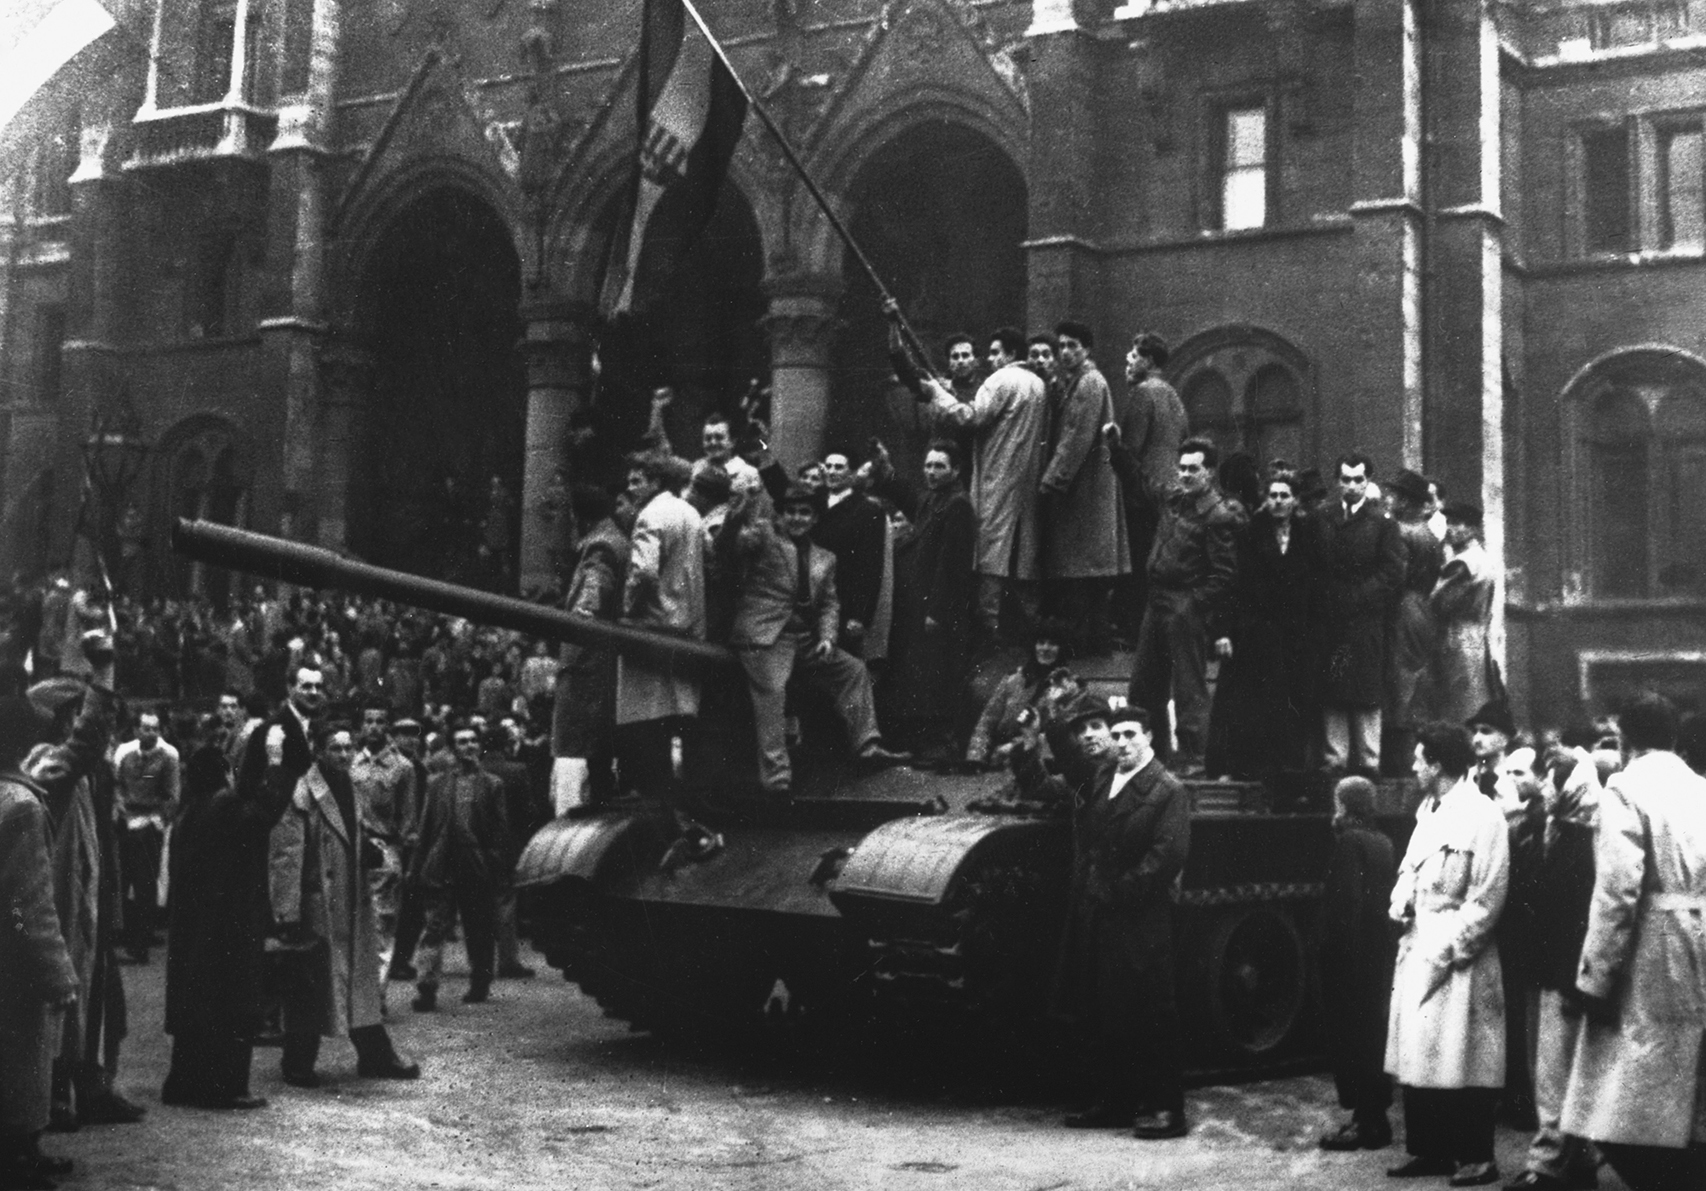 Fotografia em preto e branco. No centro, diversas pessoas de casacos estão em pé sobre um tanque de guerra. Algumas delas seguram bandeiras. Ao redor do tanque, há uma multidão de pessoas em pé. Ao fundo, fachada de construções históricas.